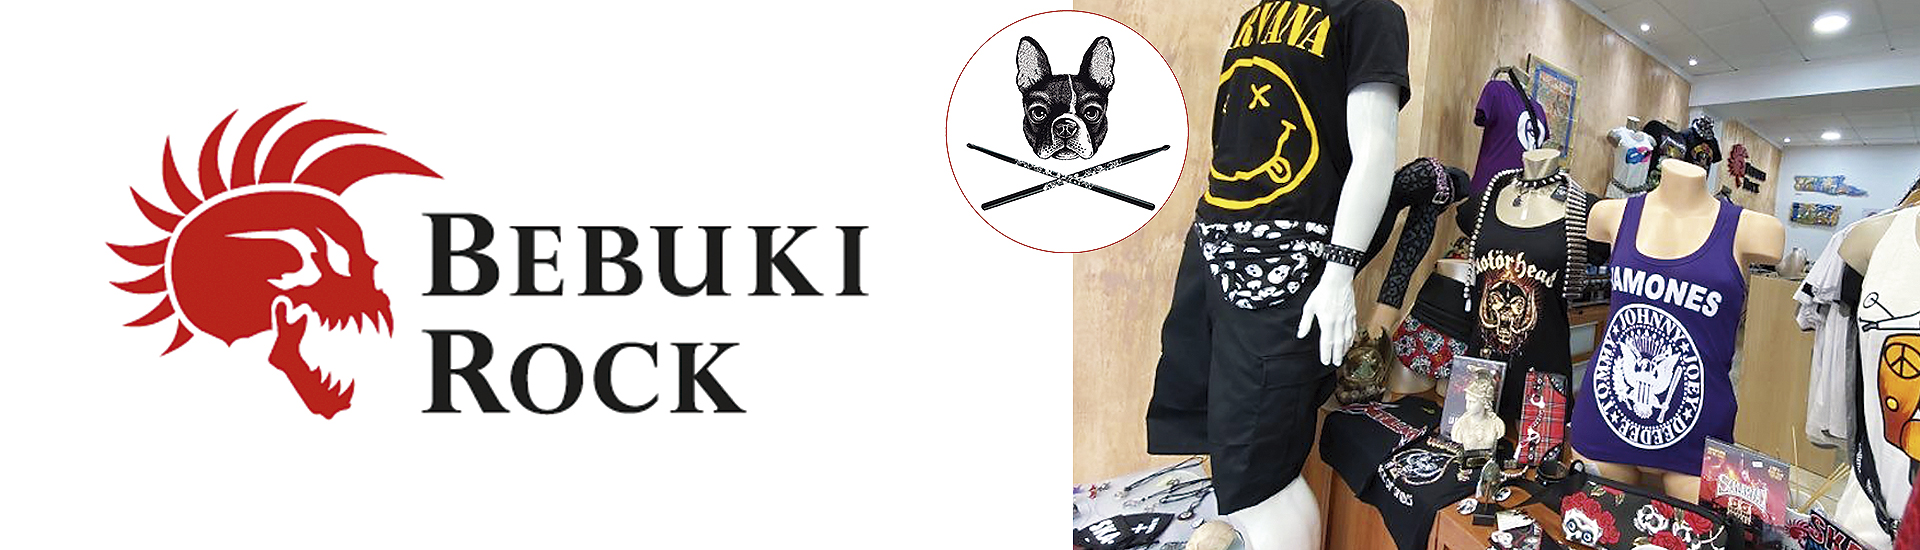 Relajante Atrevimiento recuerdos Bebuki Rock – Tienda de regalos y ropa canalla